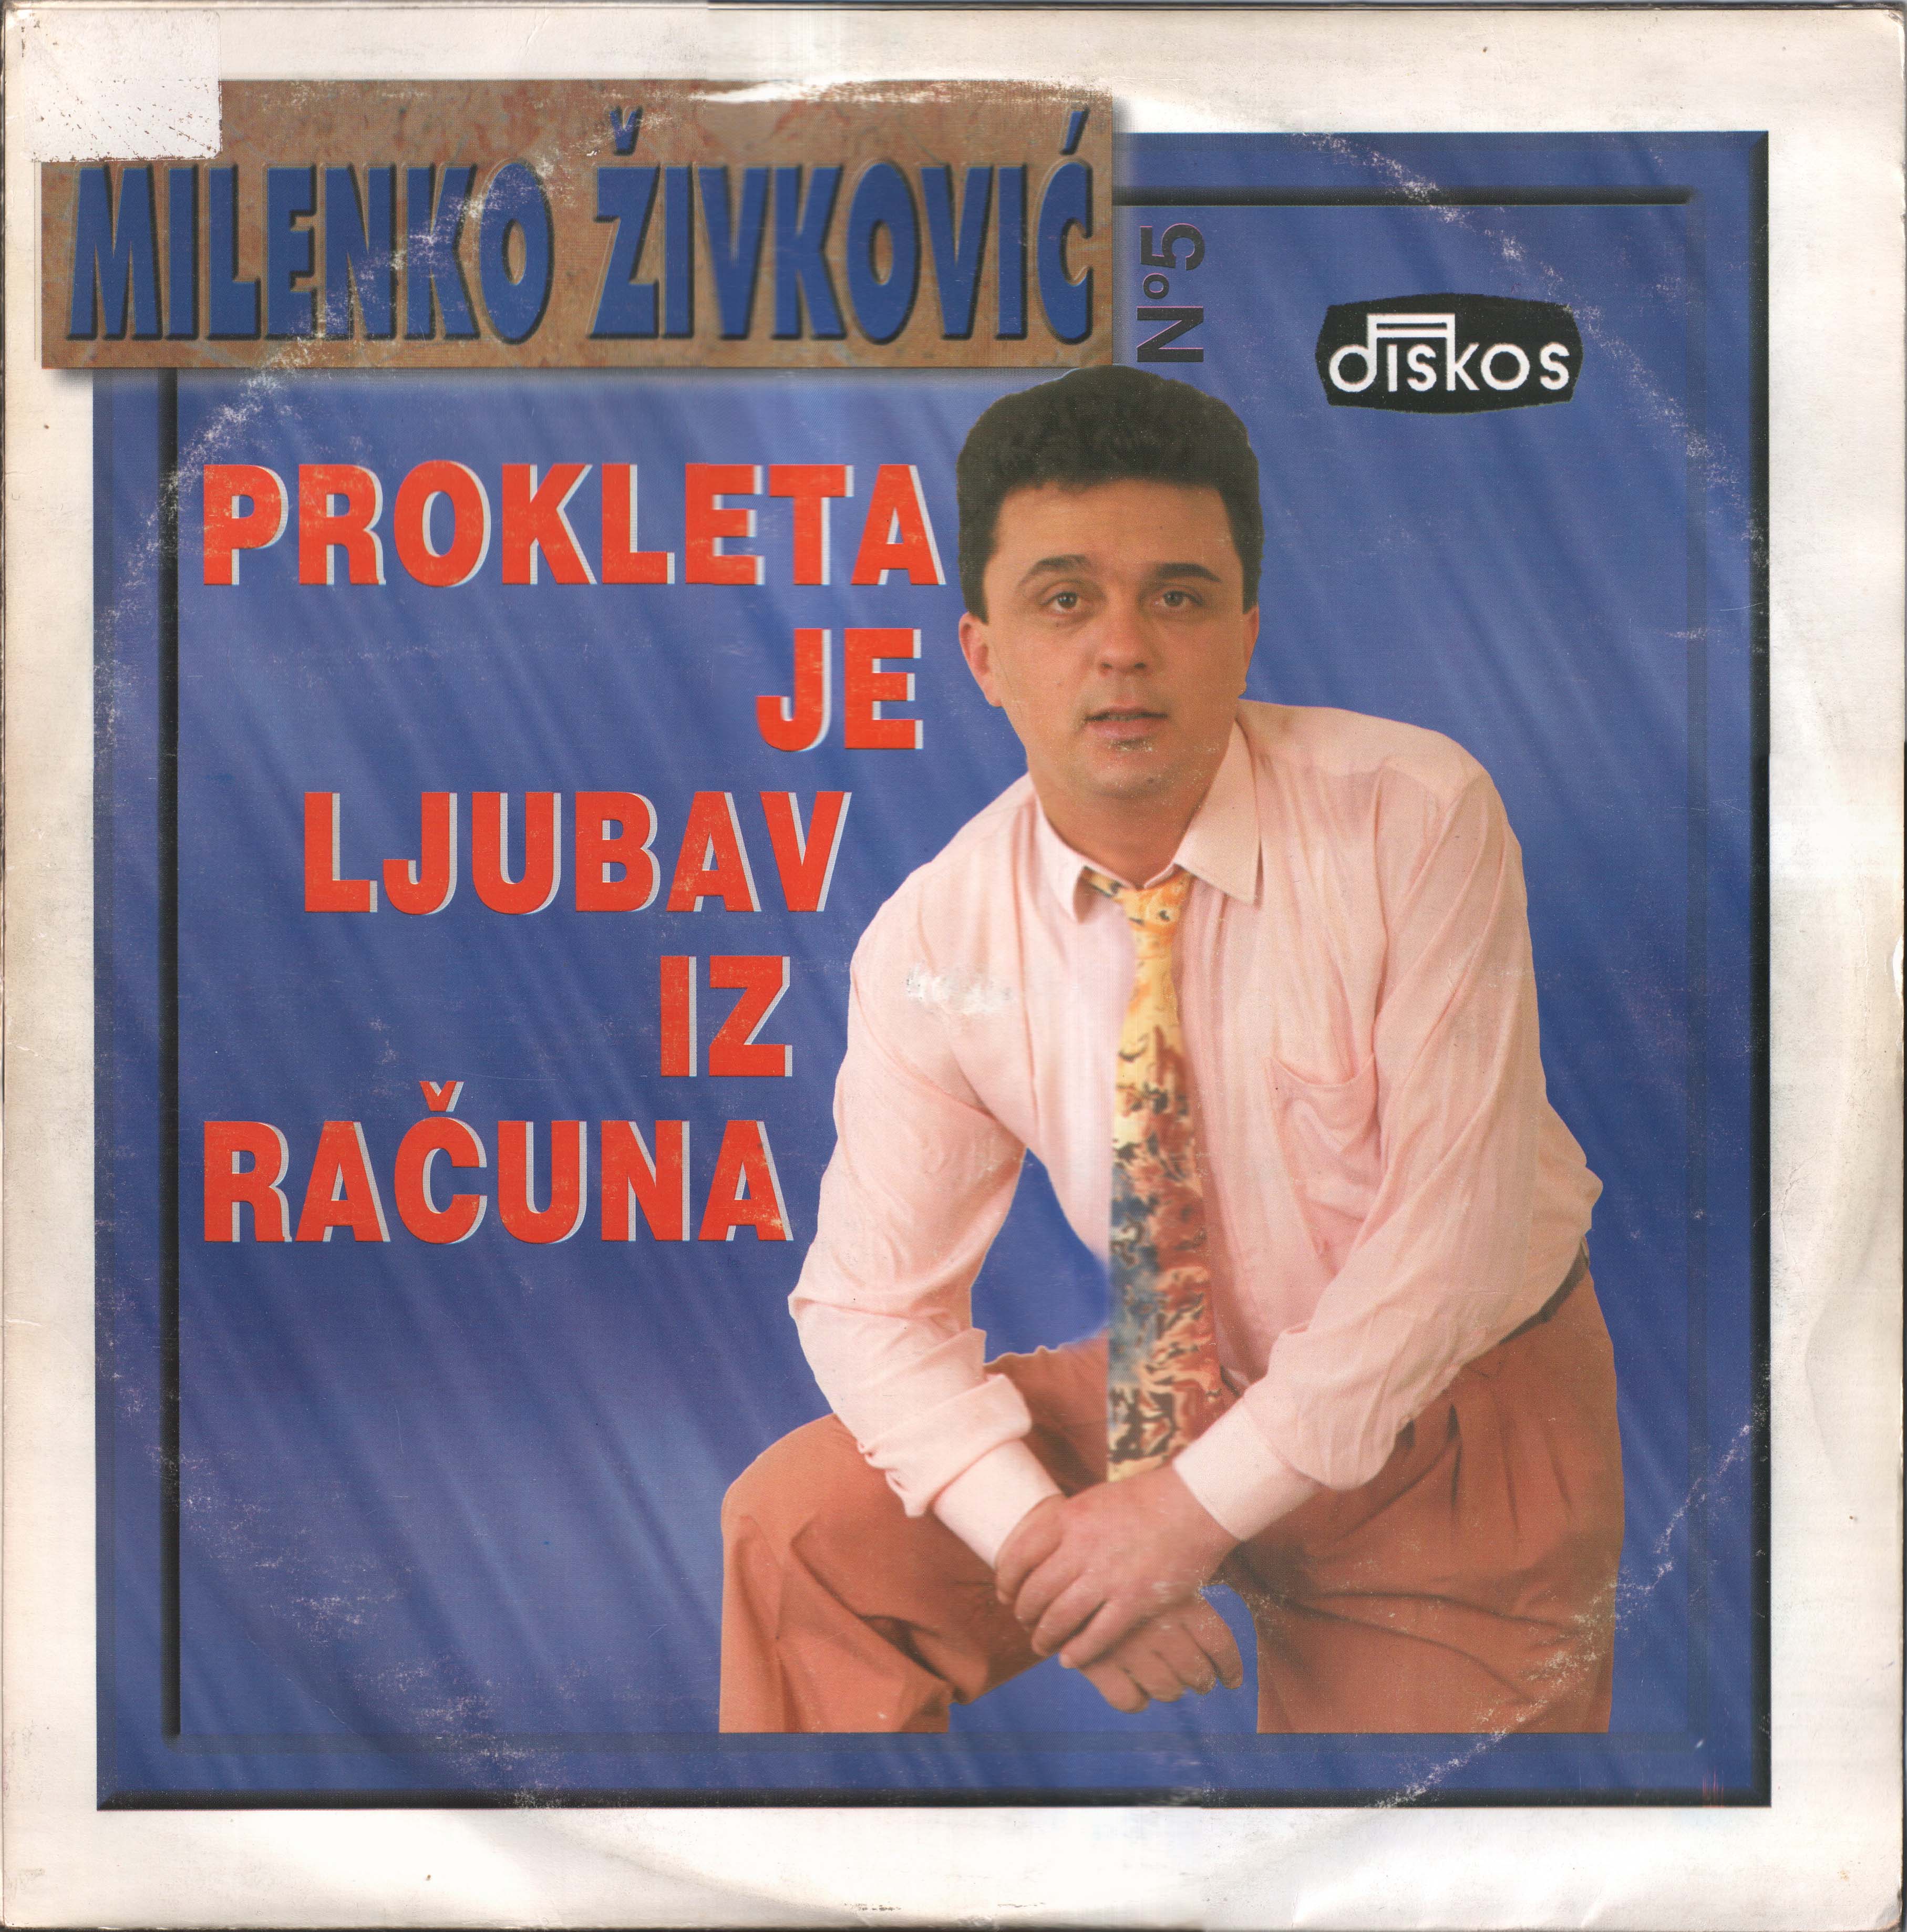 Milenko Zivkovic 1995 P